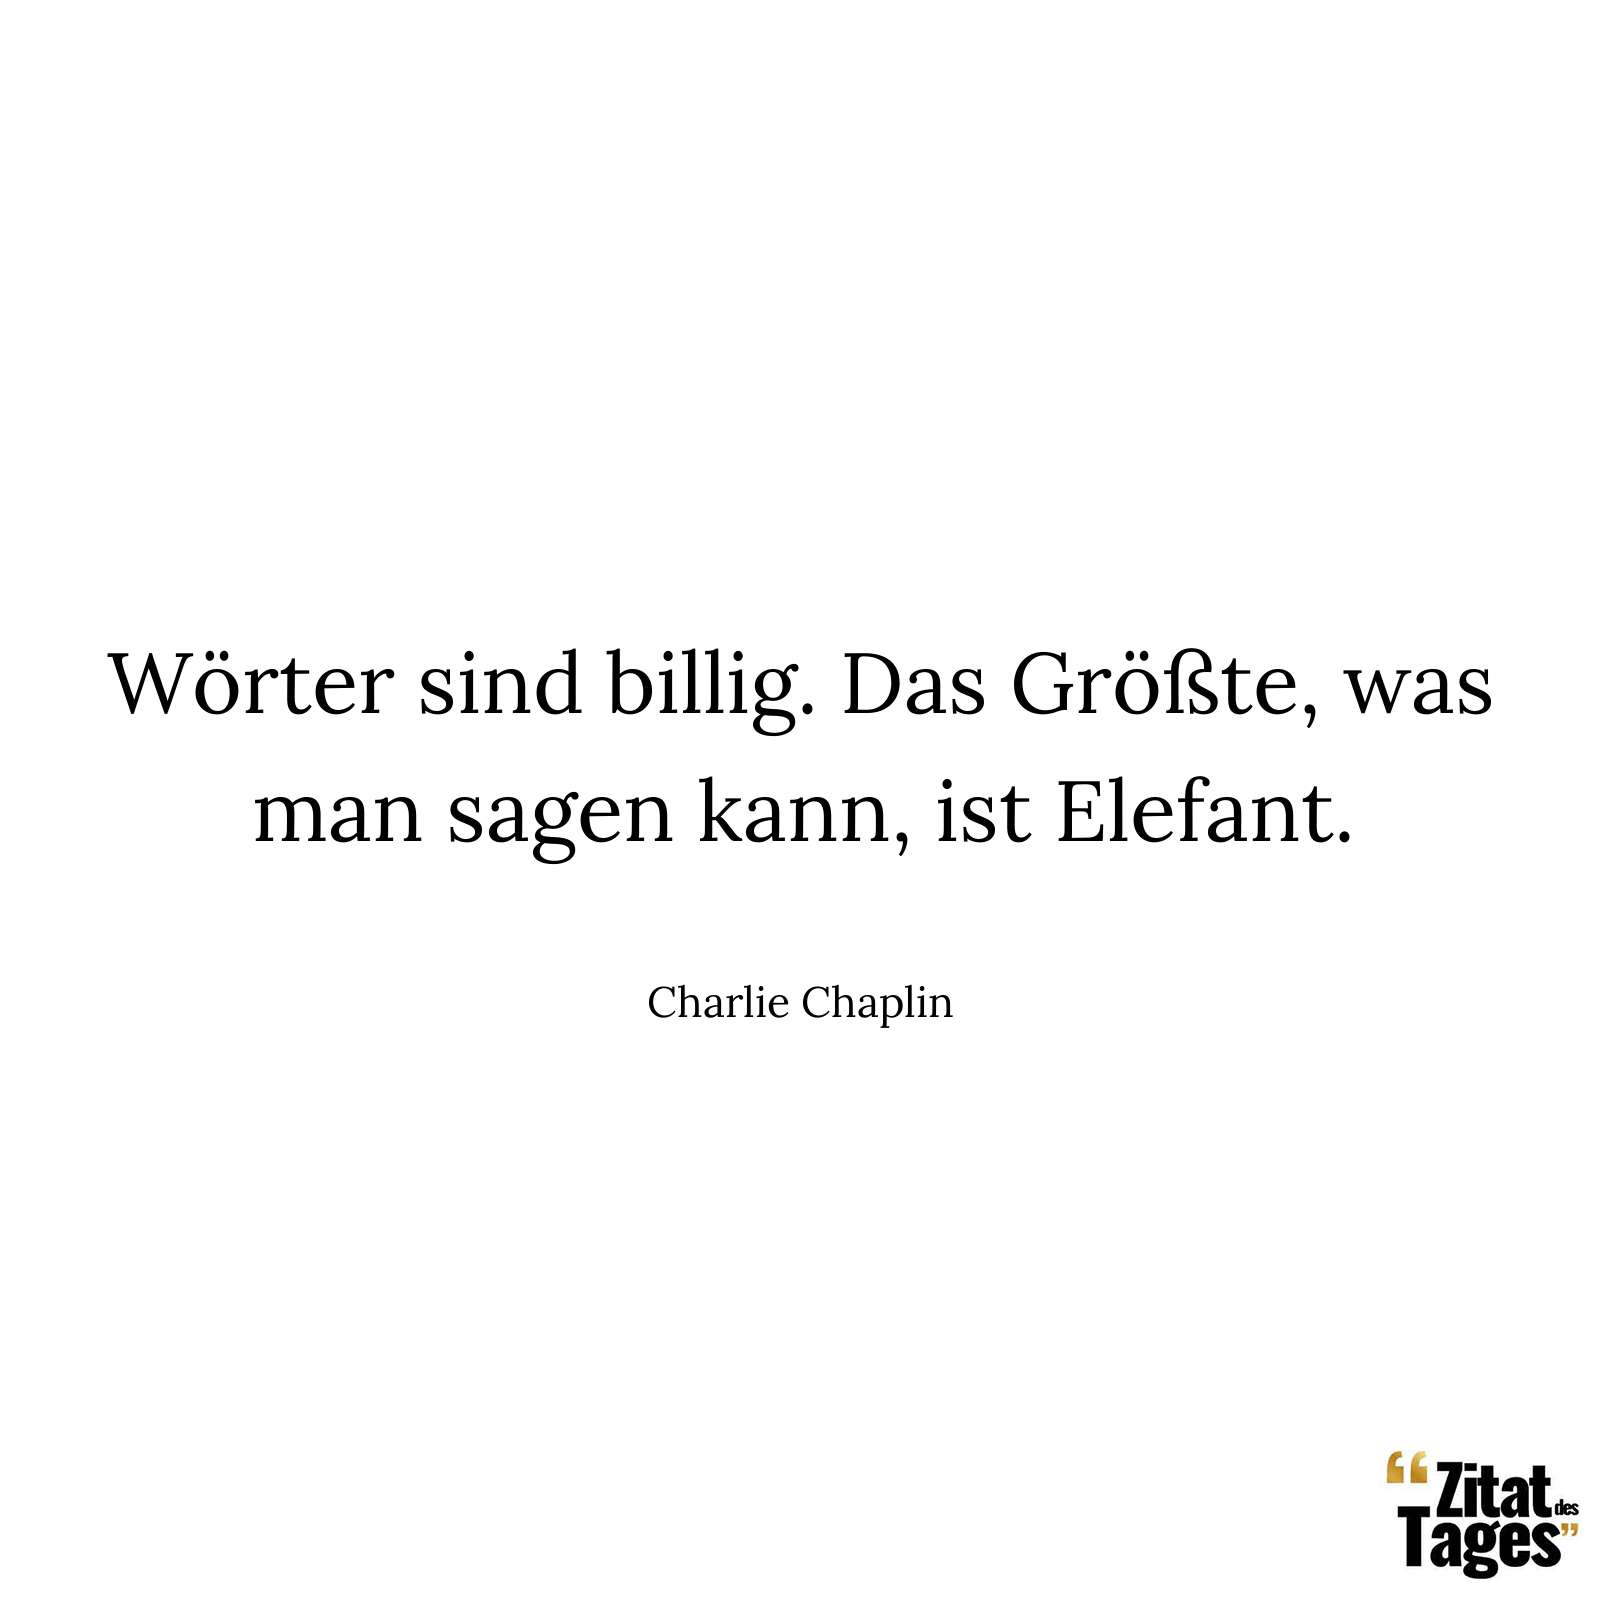 Wörter sind billig. Das Größte, was man sagen kann, ist Elefant. - Charlie Chaplin